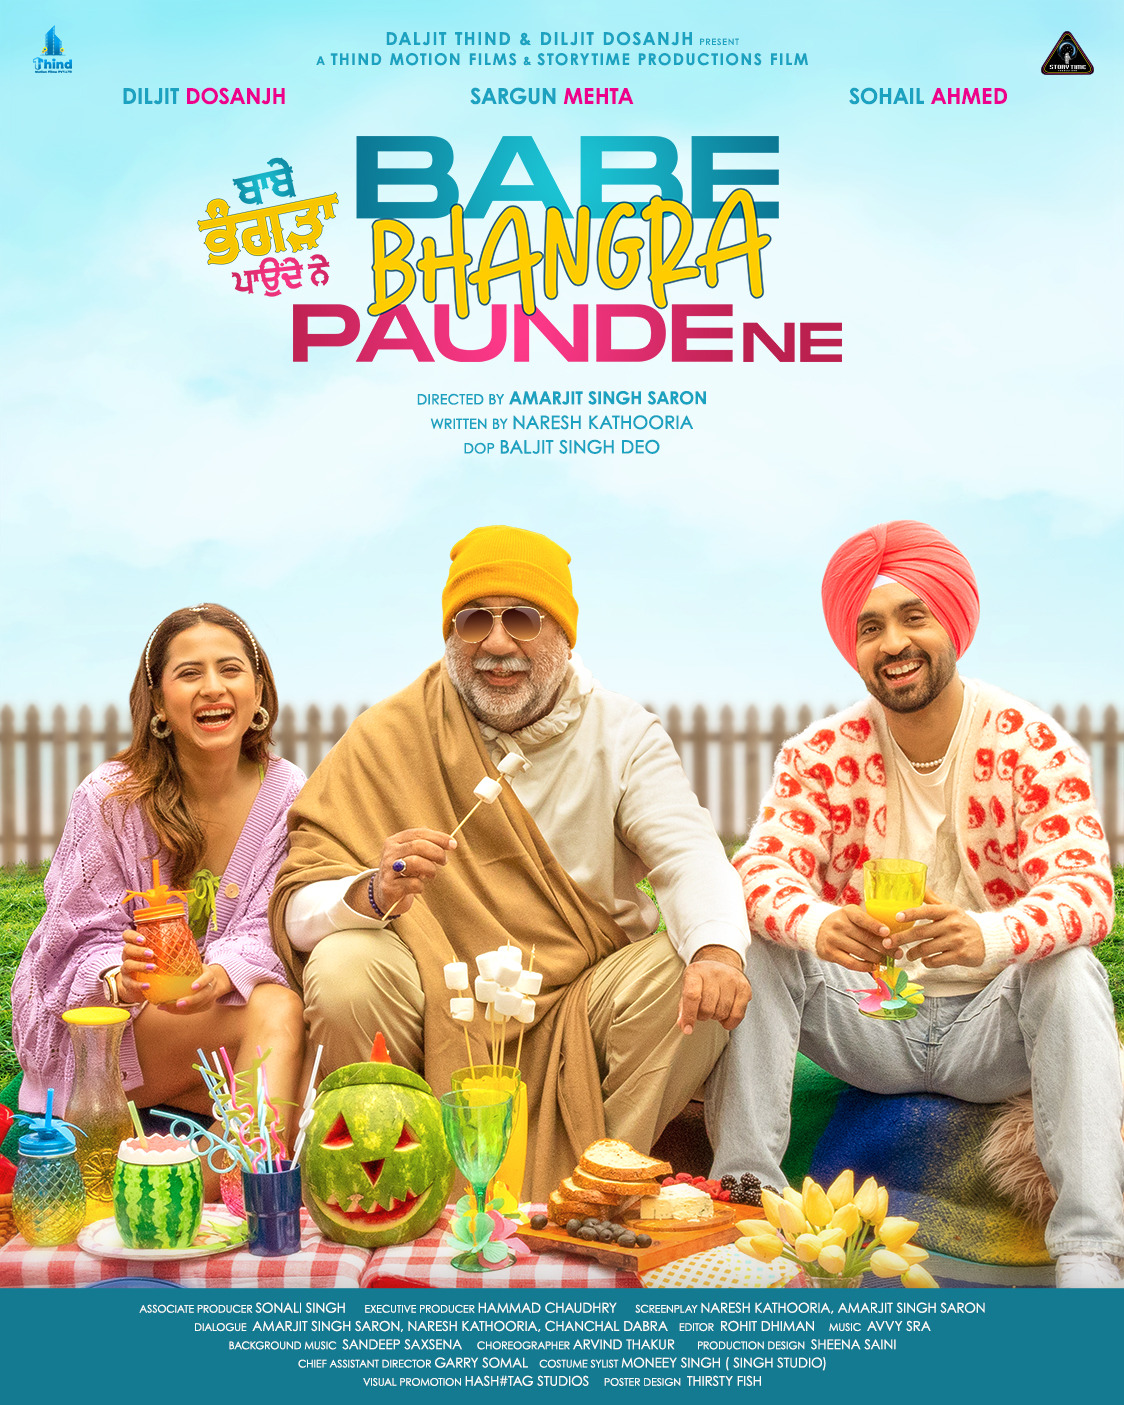 Extra Large Movie Poster Image for Babe Bhangra Paunde Ne (#2 of 4)